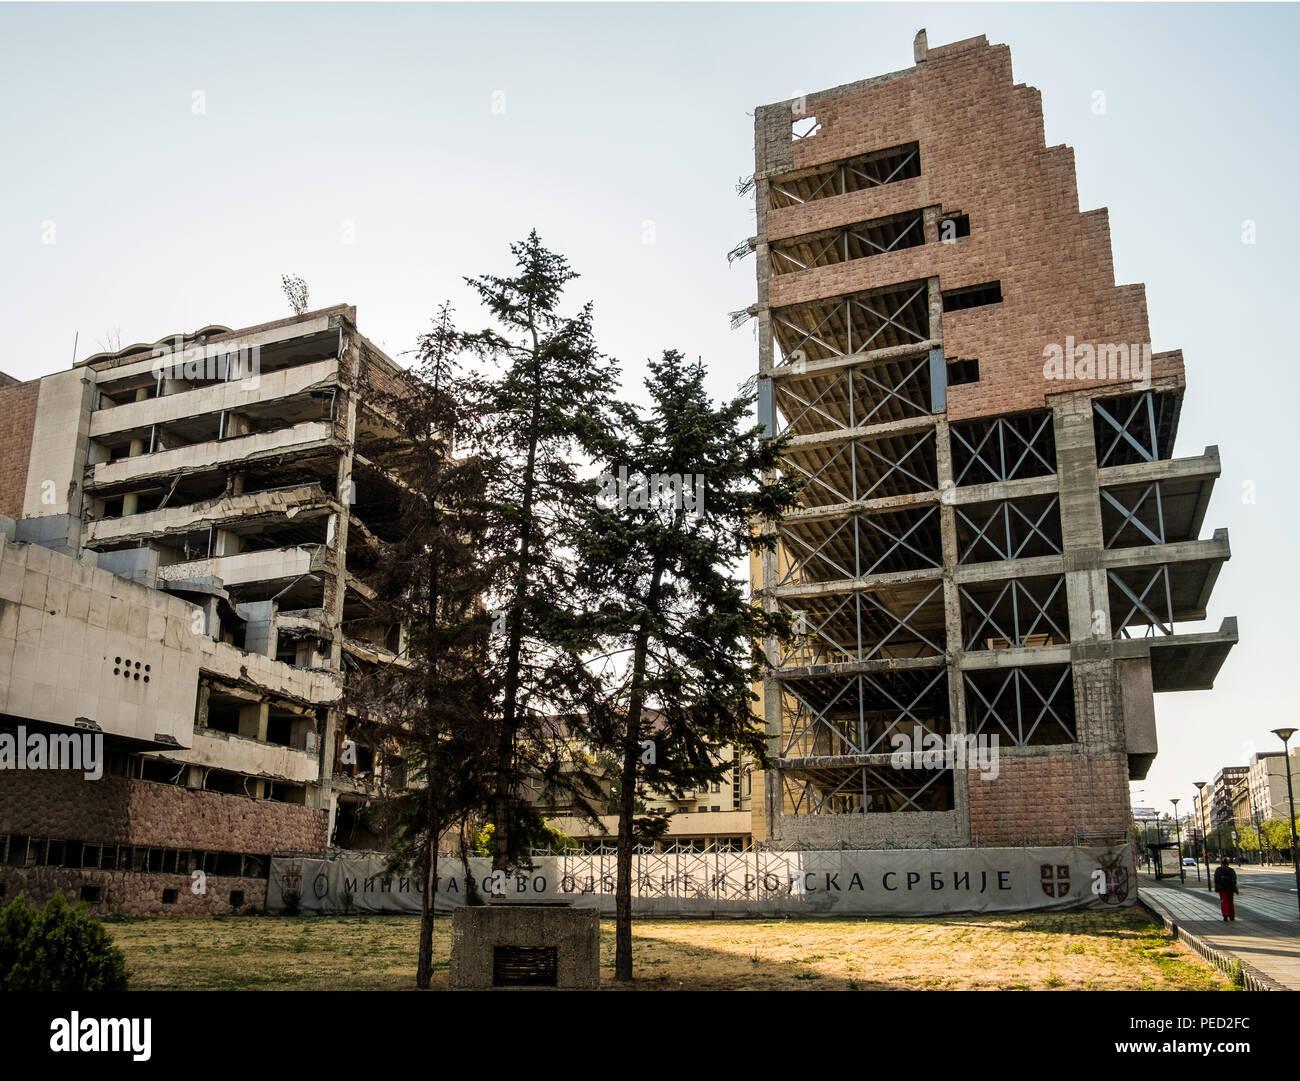 Belgrad, Serbien. August 27, 2017. Allgemeine Streitkräfte Personal Gebäude, das im Krieg von 1999 Balkan bombardiert, immer noch als Denkmal zerstört. Stockfoto